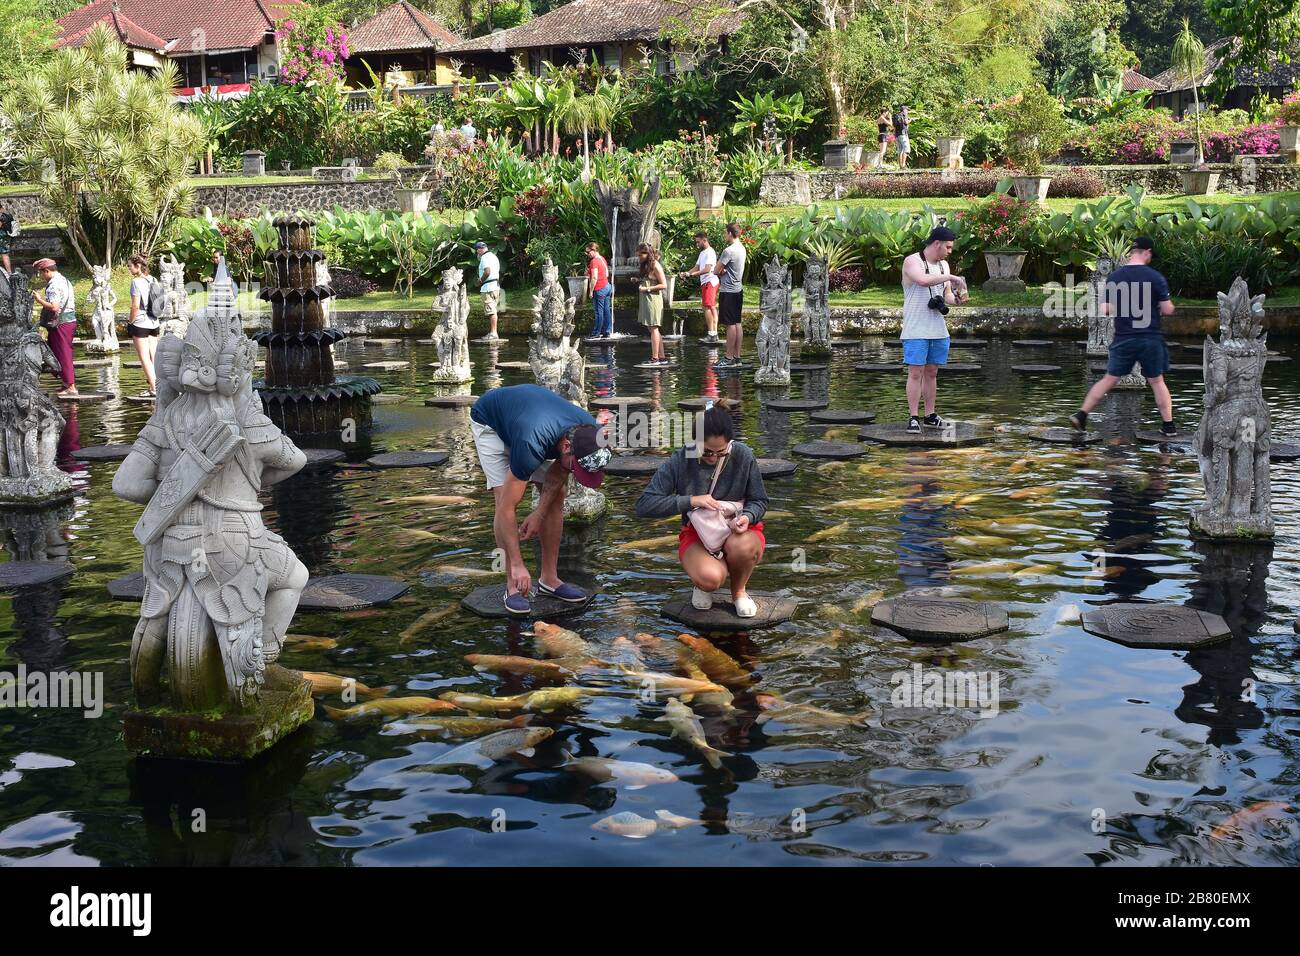 Les touristes se nourrissent de poissons d'eau douce à partir de marches en pierre du palais de l'eau de Tirtagangga à Bali. Banque D'Images